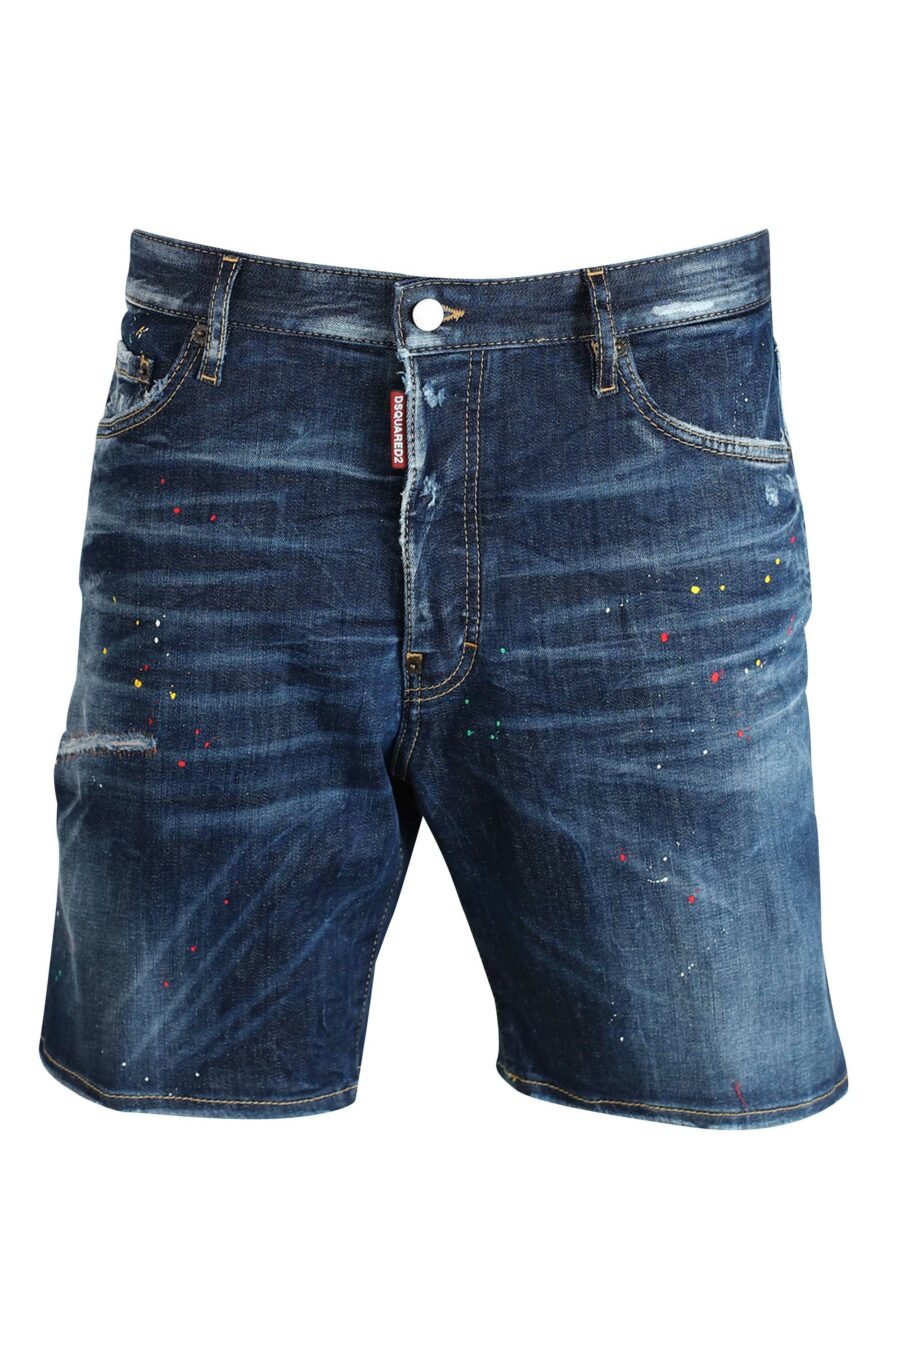 Blue denim shorts "marine short" semi-worn - 8052134716779